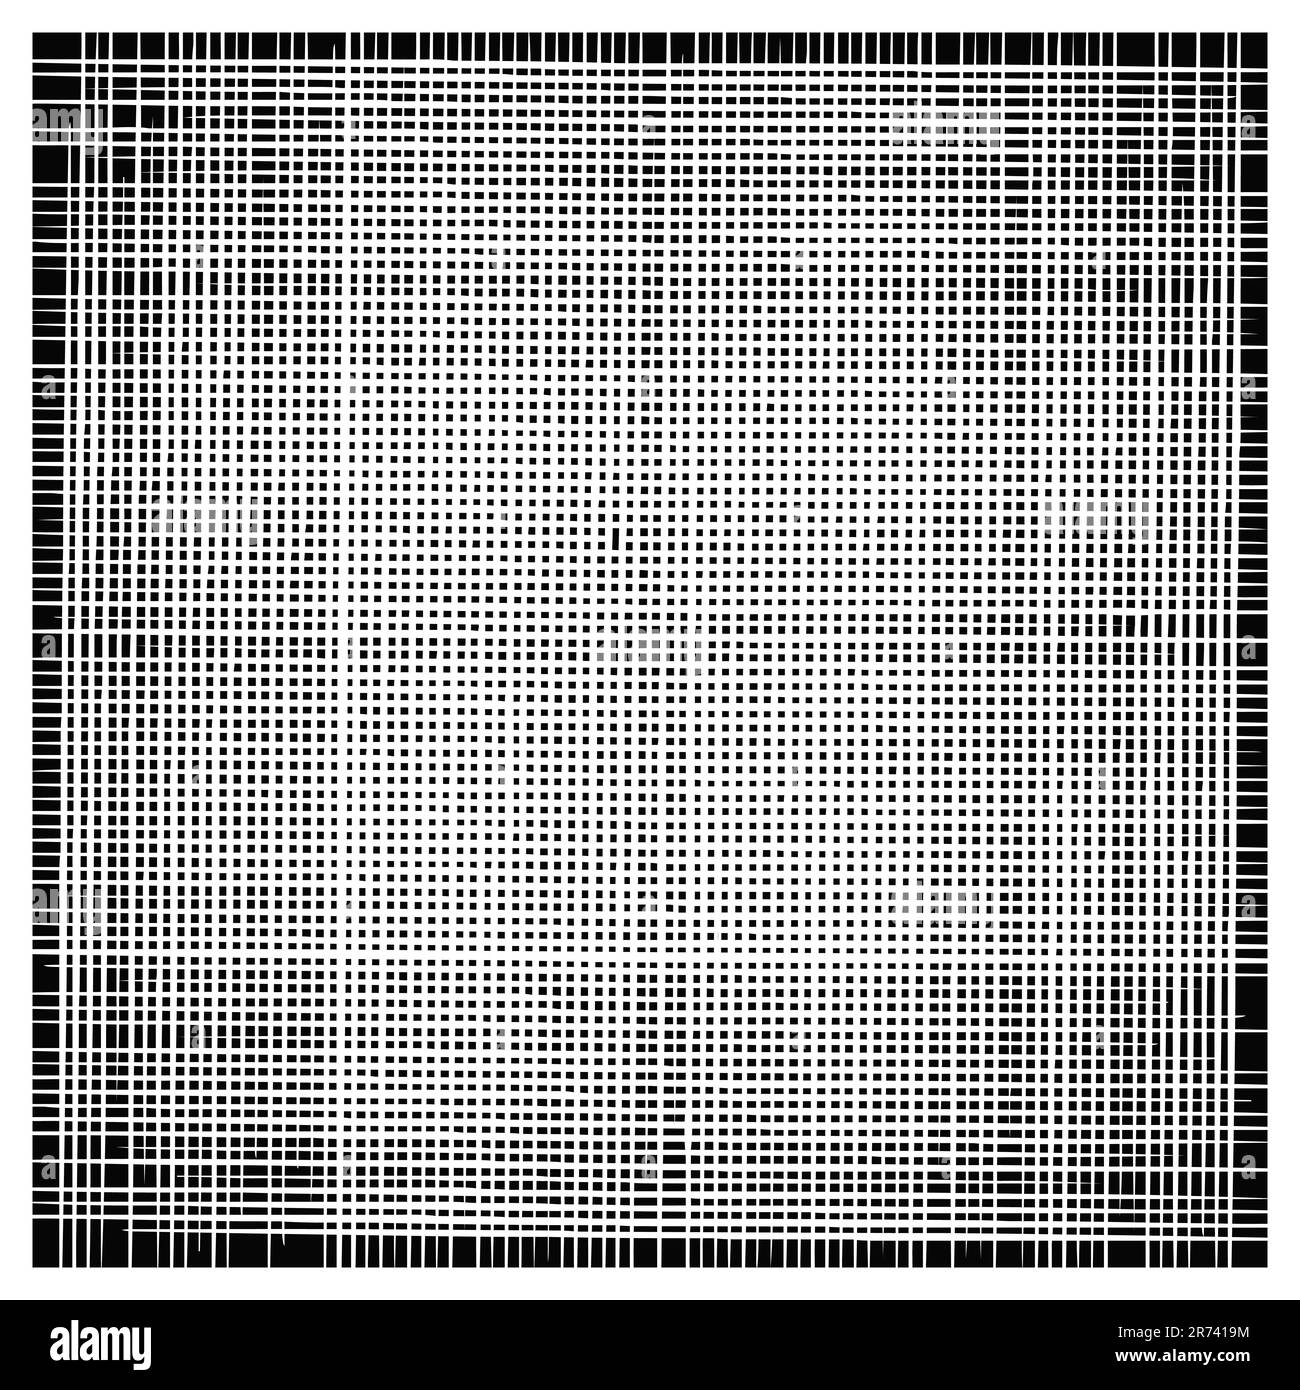 Grunge Textur quadratisch schwarz abstrakter Hintergrund kariertes Muster Design-Element Vektordarstellung isoliert auf weißem Hintergrund Stock Vektor